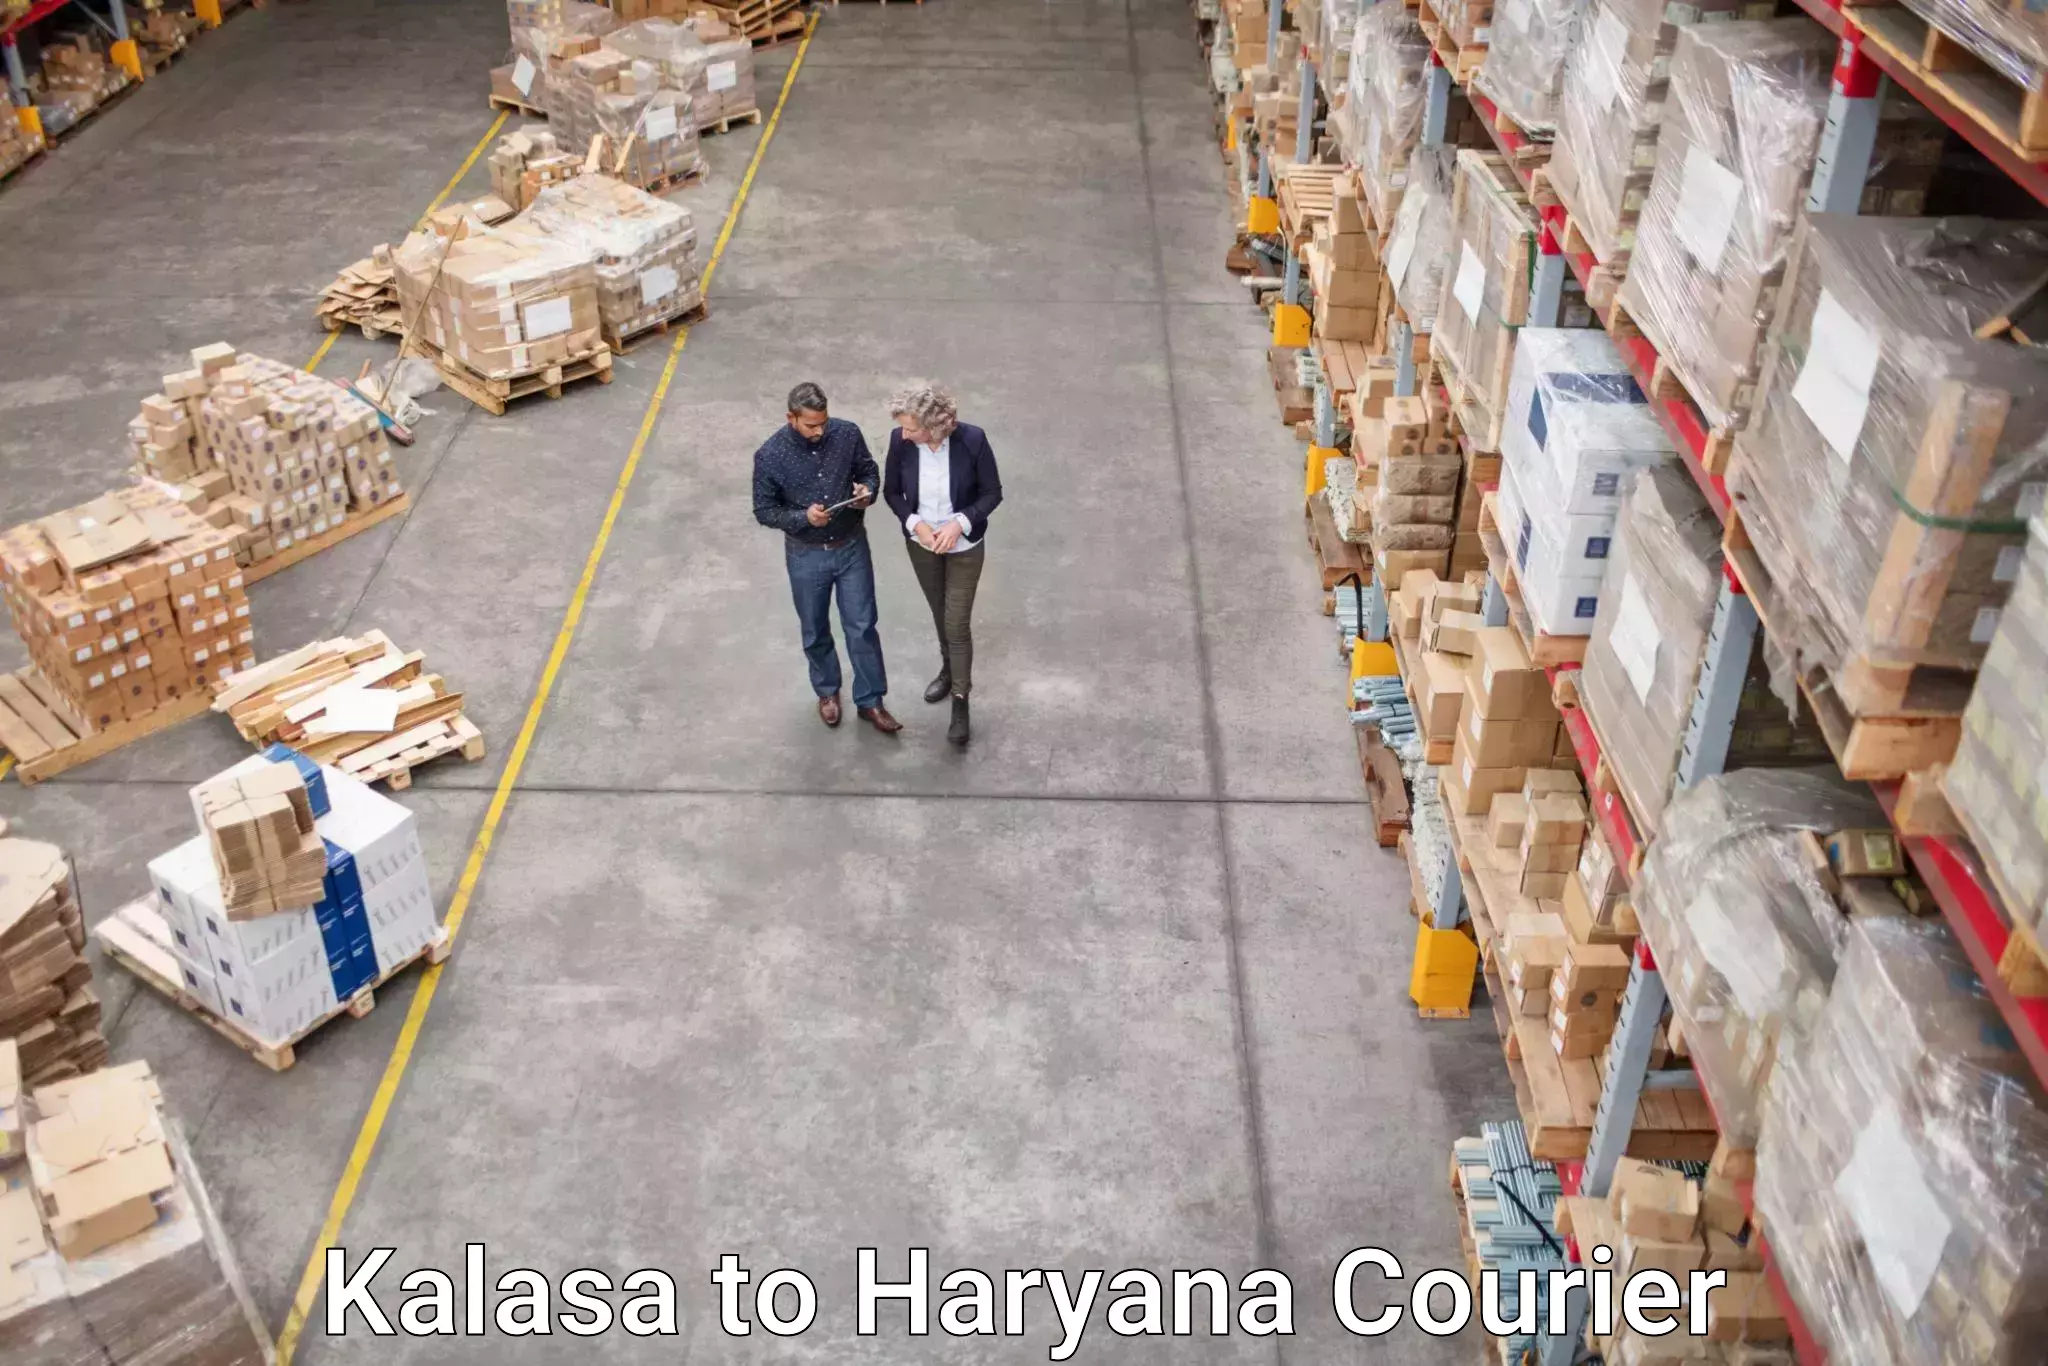 Express courier facilities in Kalasa to Haryana